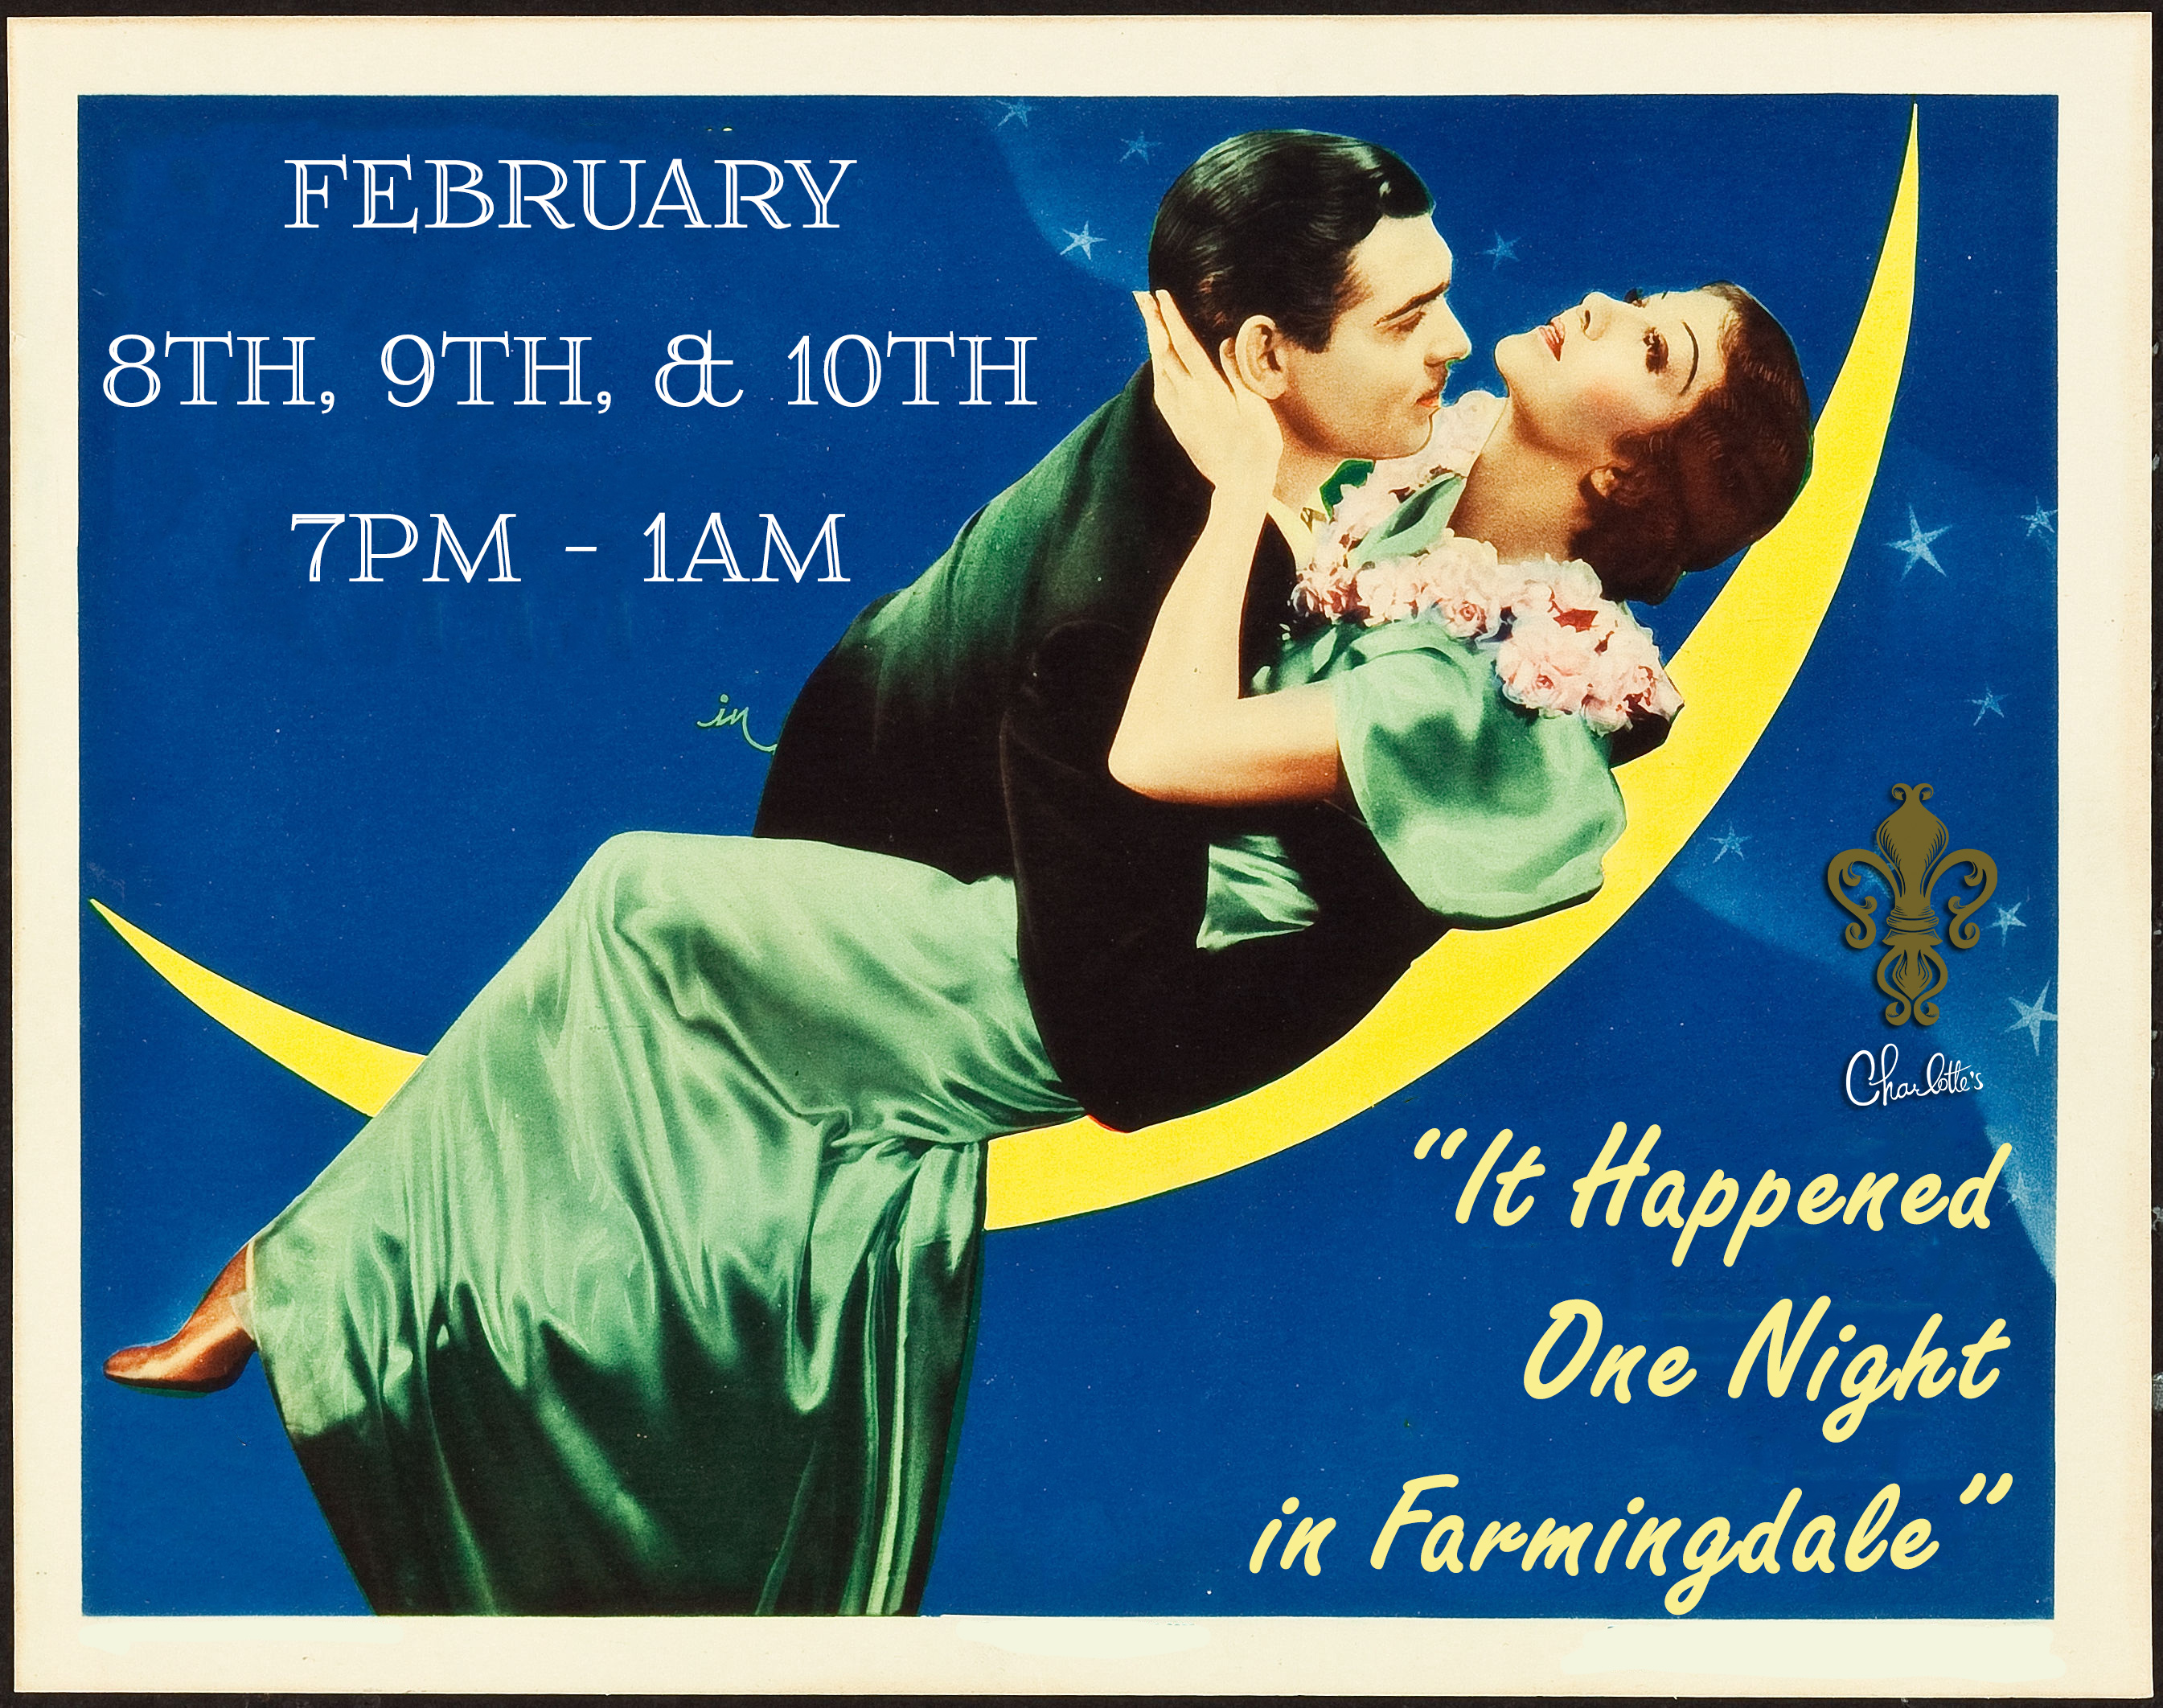 "It Happened One Night in Farmingdale" Weekend of Love